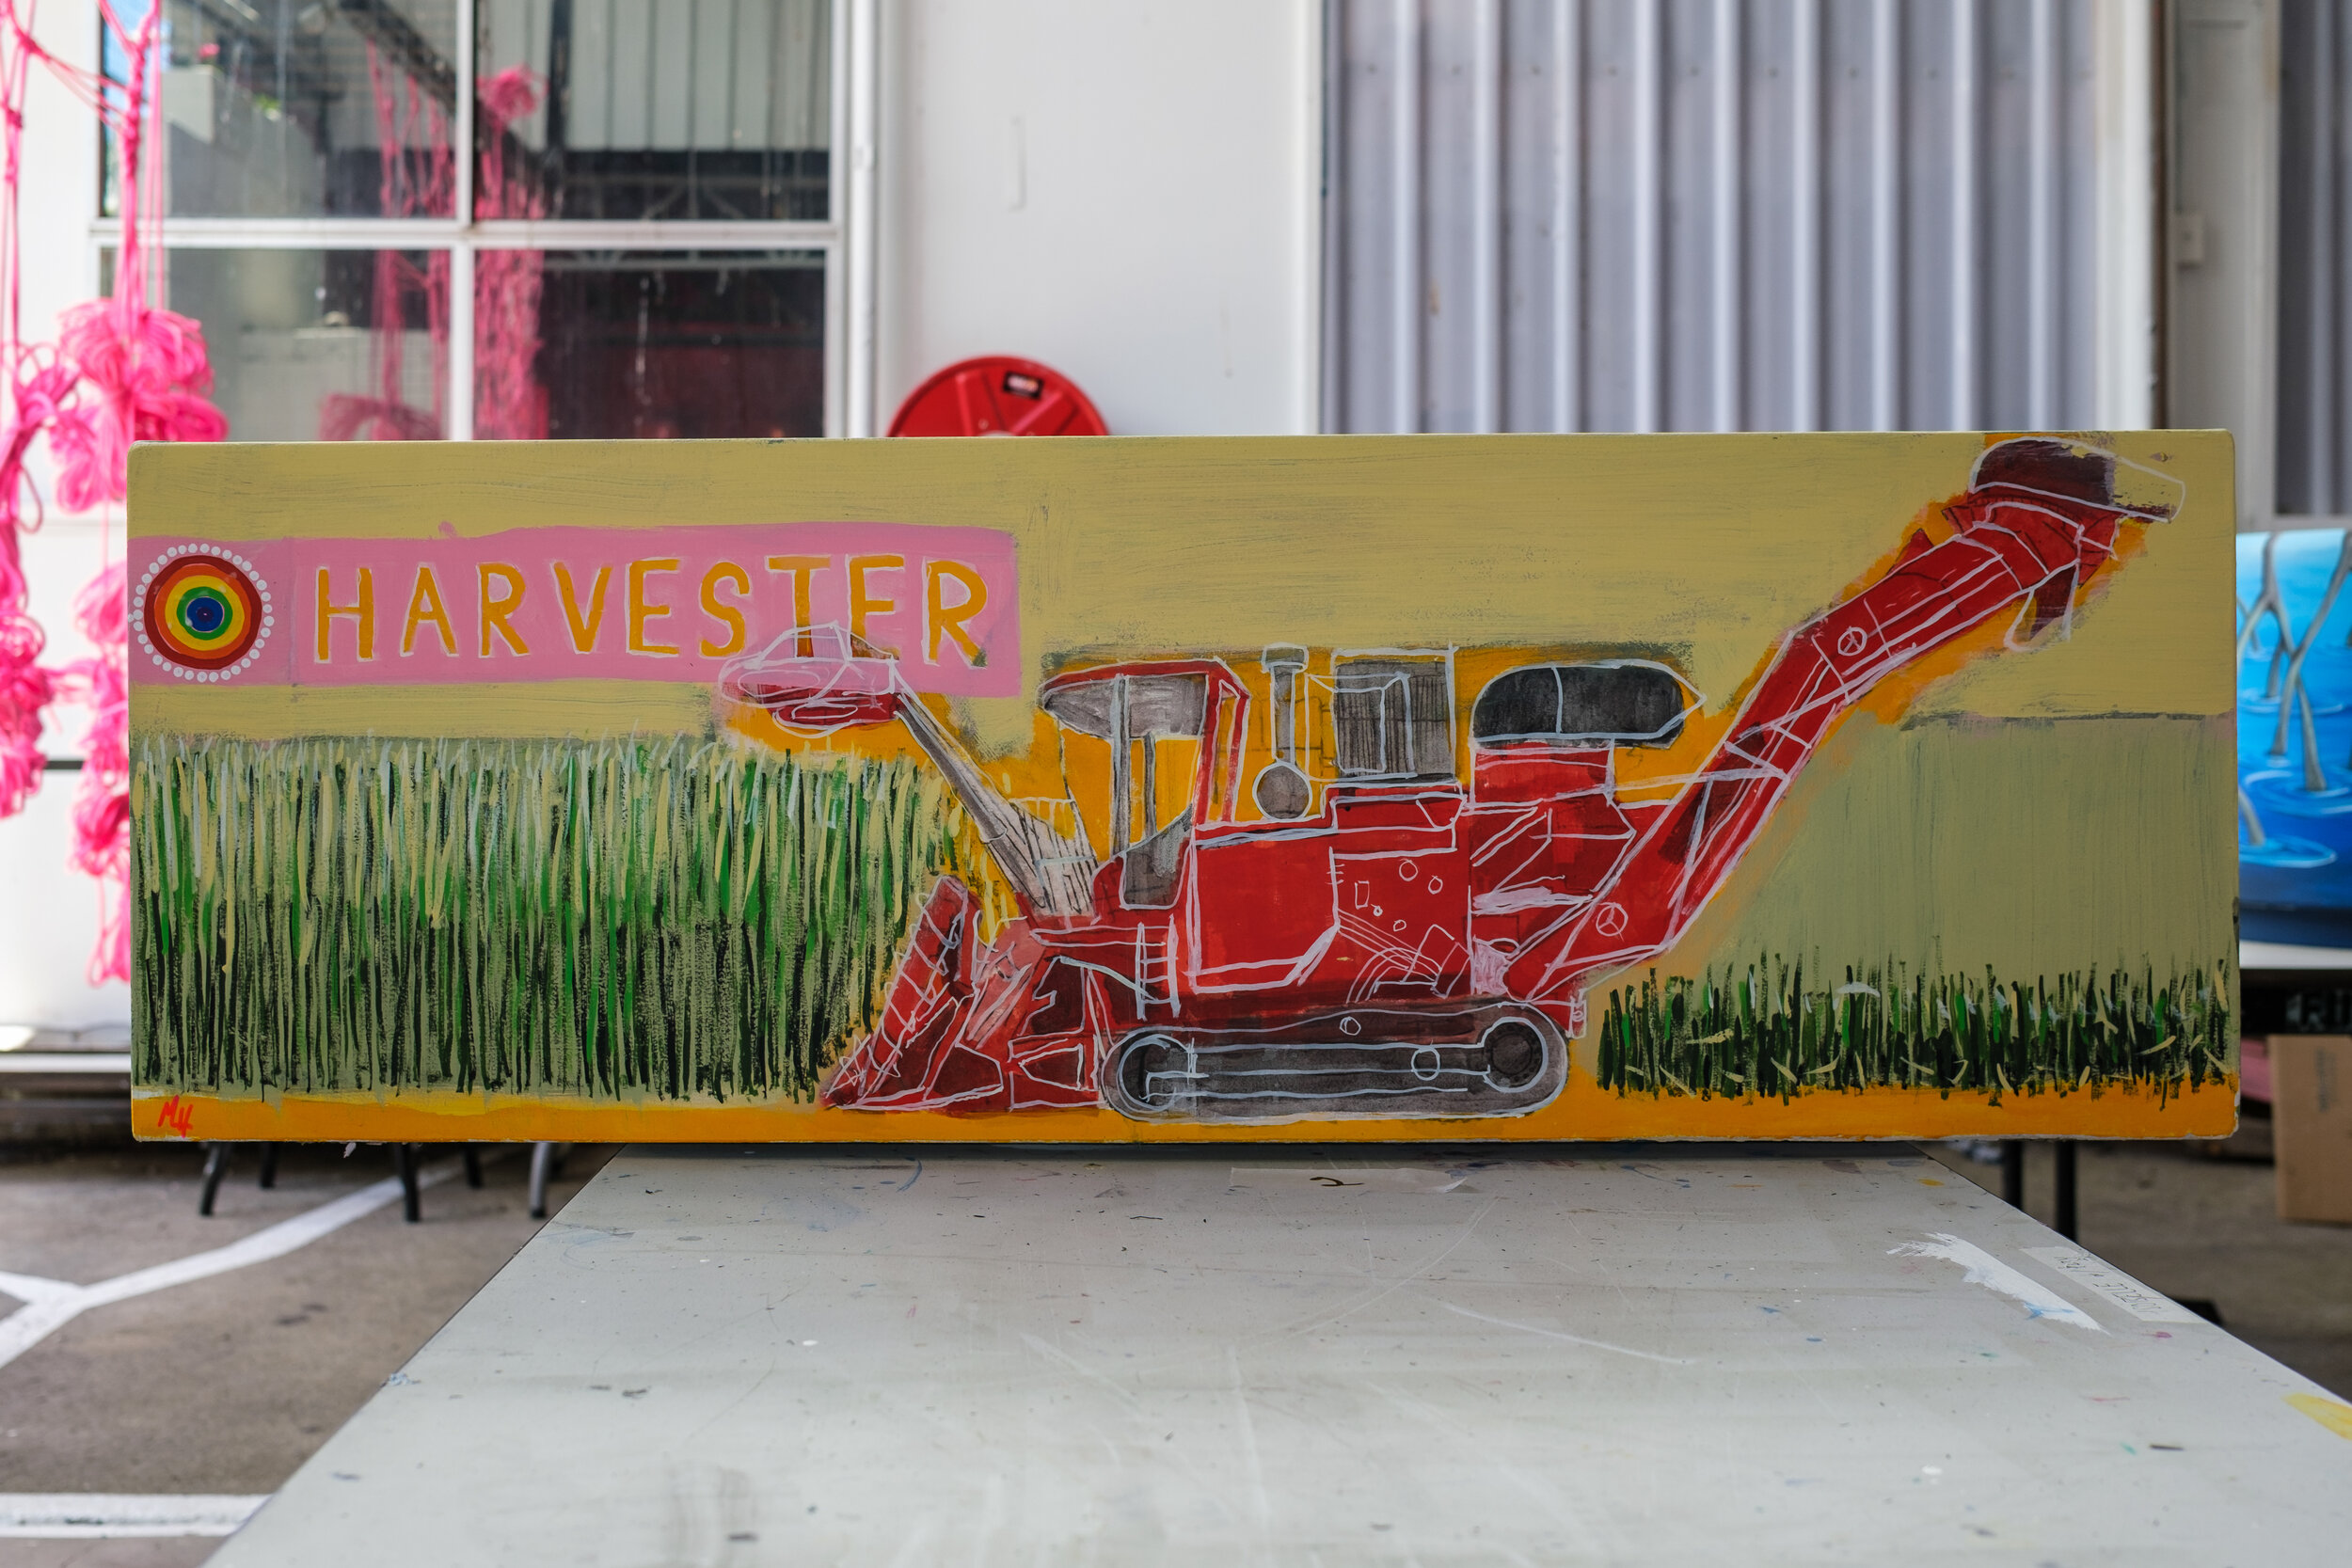 cane-harvester-1.jpg